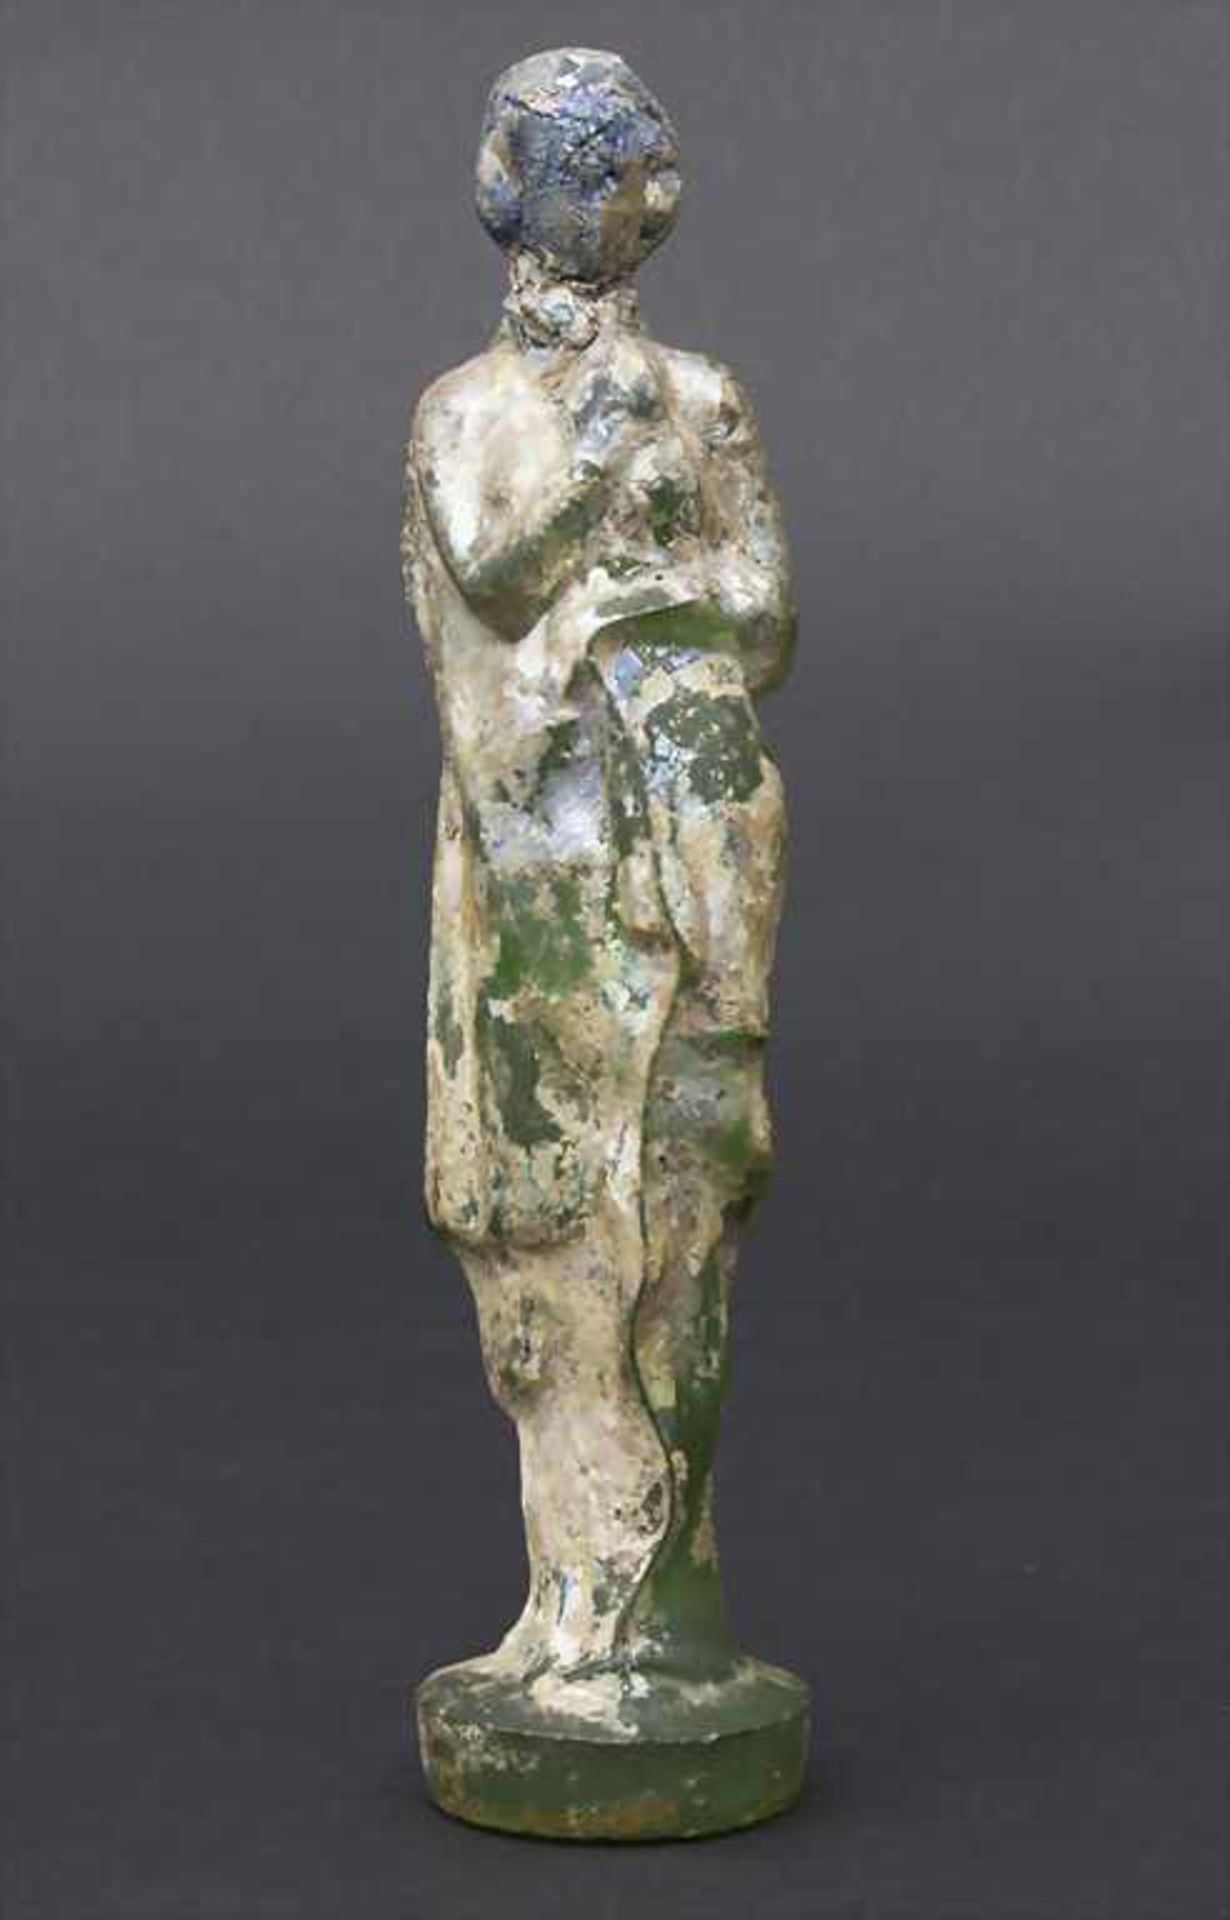 Museumsreplik einer antiken Glasskulptur / A museum replica of an antique sculpture